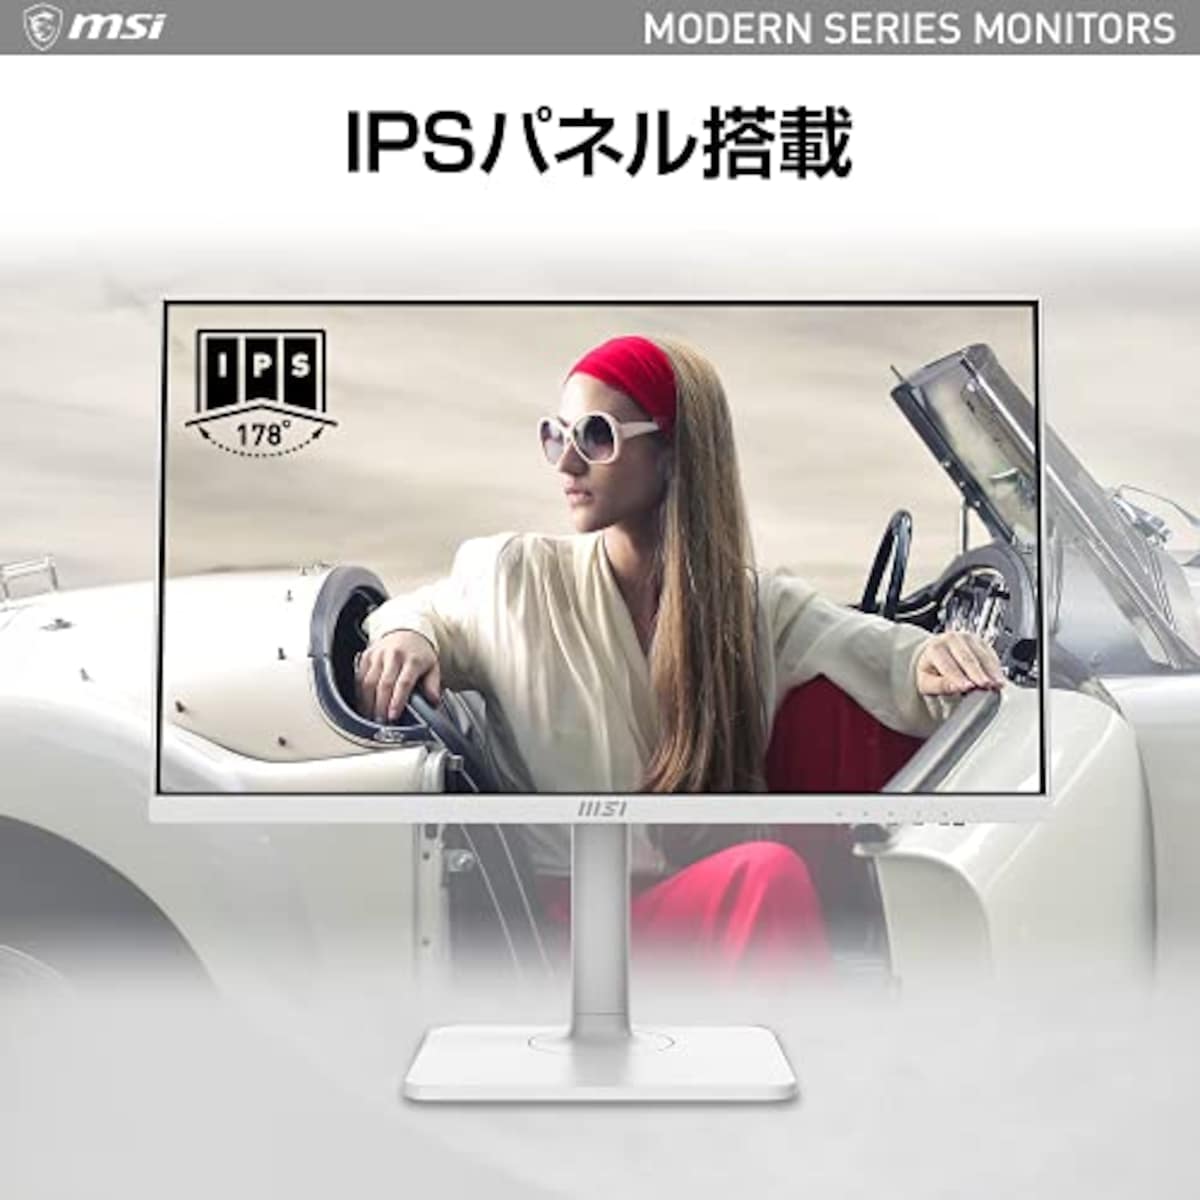  【Amazon.co.jp限定】 MSI Modern MD241PW モニター 薄型 IPSパネル スピーカー搭載 フルHD/23.8インチ/HDMI/USB Type-C/ブルーライトカット/アンチフリッカー/VESA対応/ピボット・角度・高さ調整/3年保証画像3 